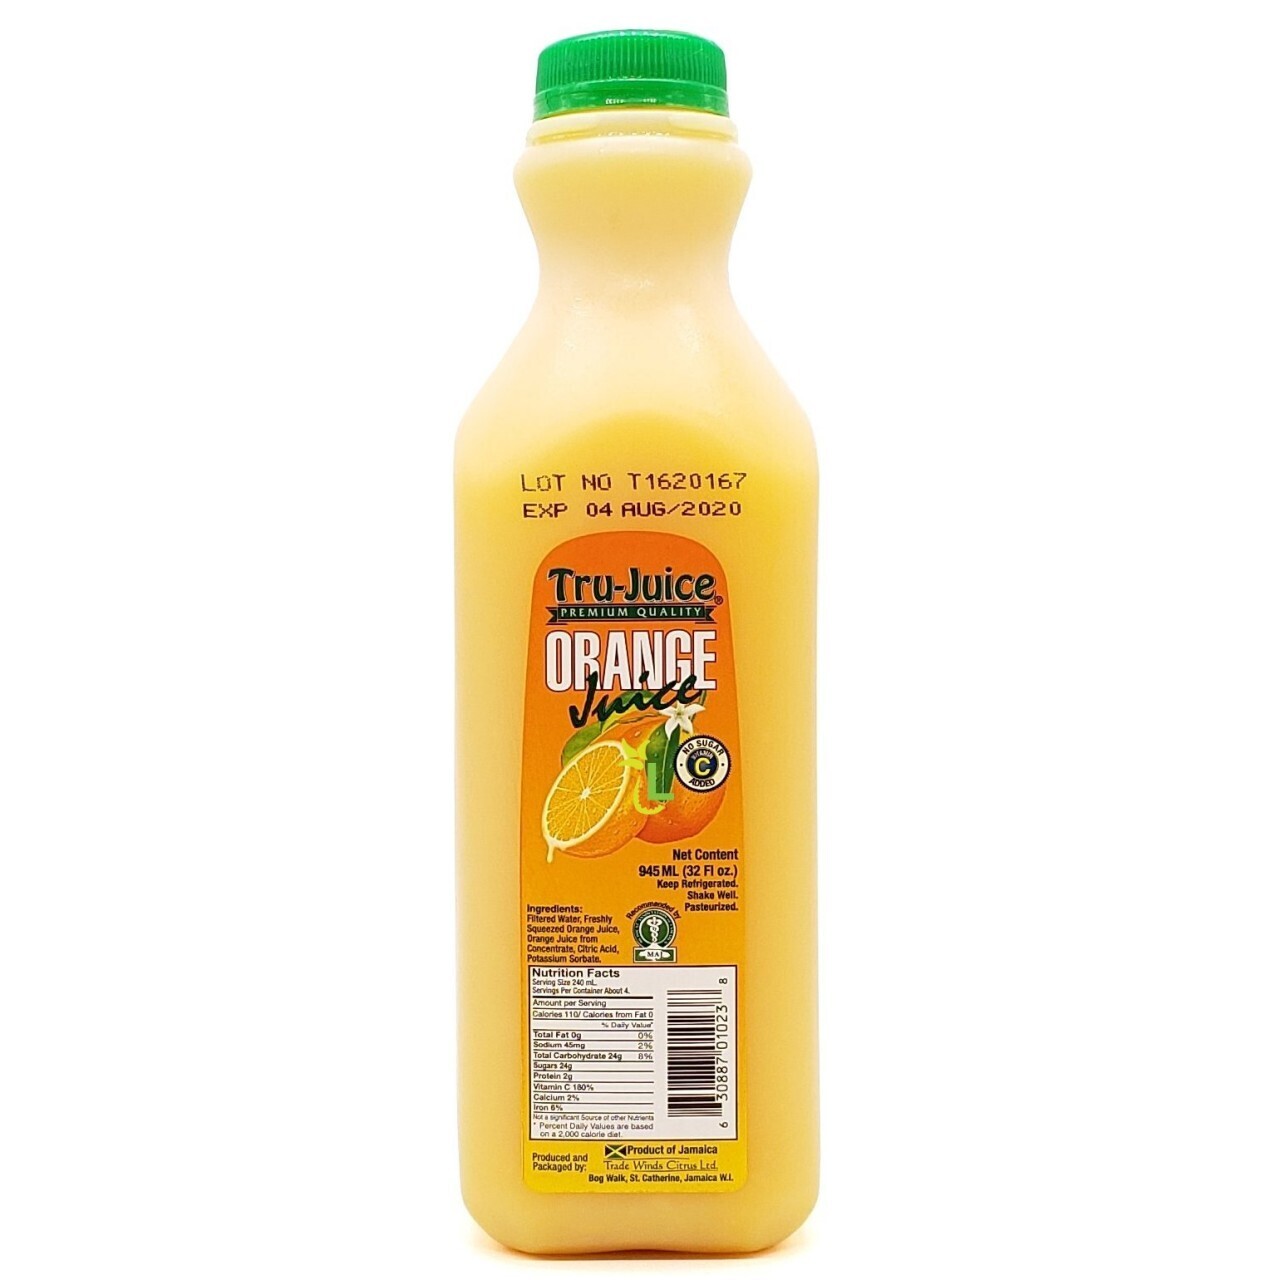 Tru Juice Orange Juice (945ml)